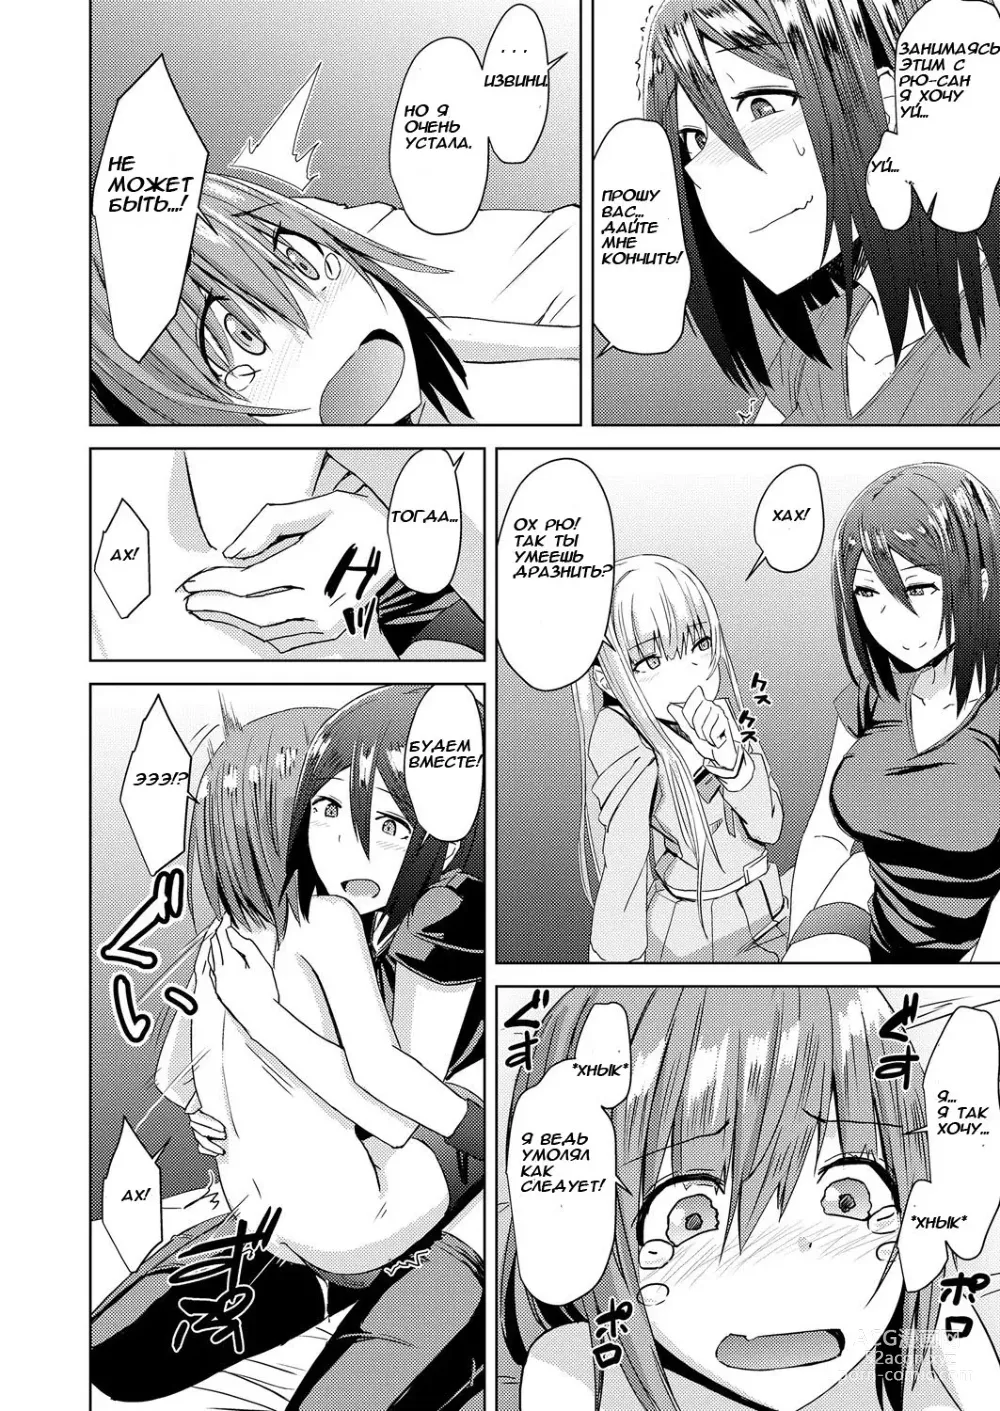 Page 20 of manga Watashitachi no Kizashi